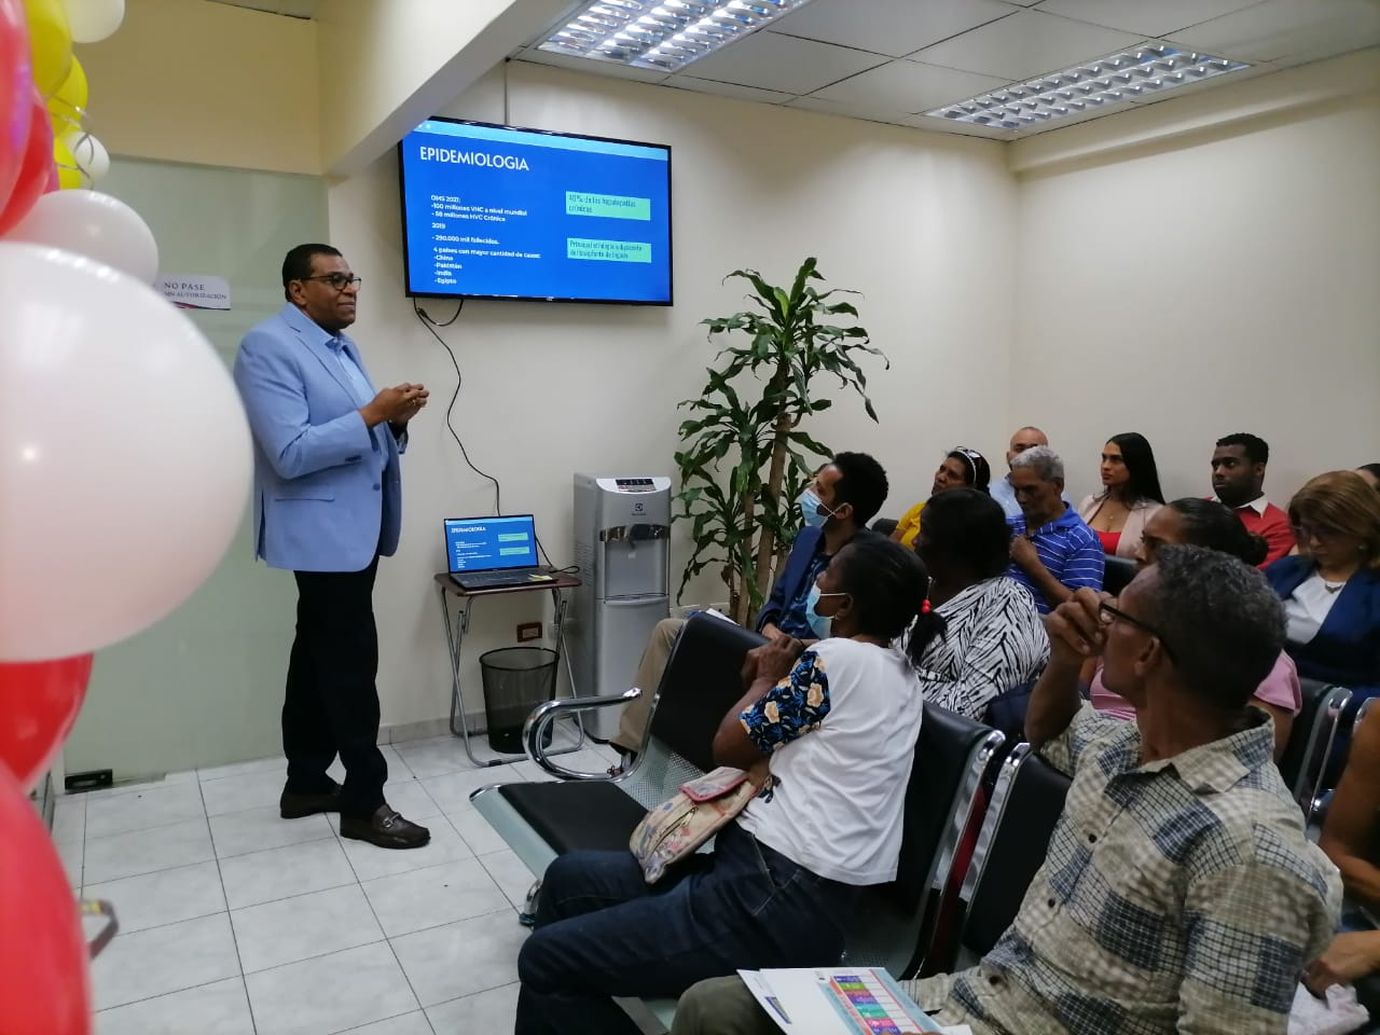 REPÚBLICA DOMINICANA: El Gobierno provee fármacos de alto costo para la hepatitis C a 1,827 personas con una inversión de RD 586.4 millones